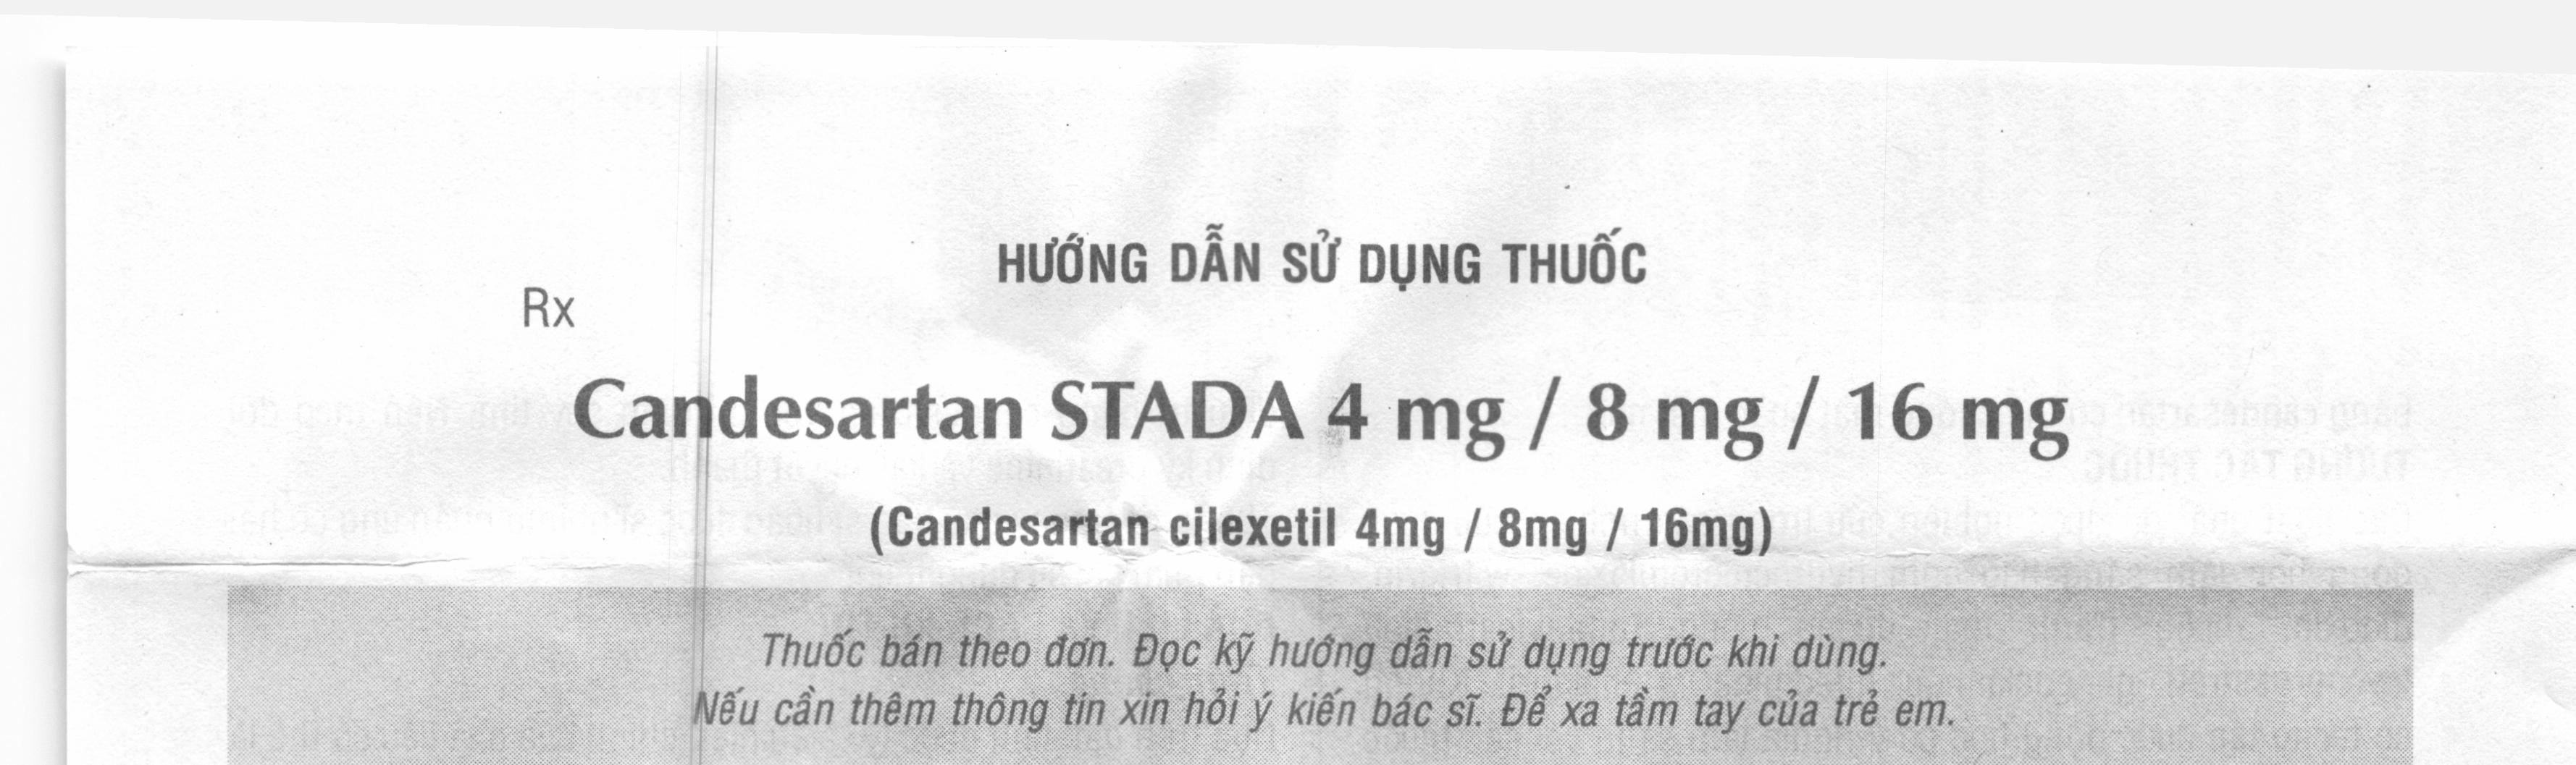 Candesartan Stada 8mg trị tăng huyết áp